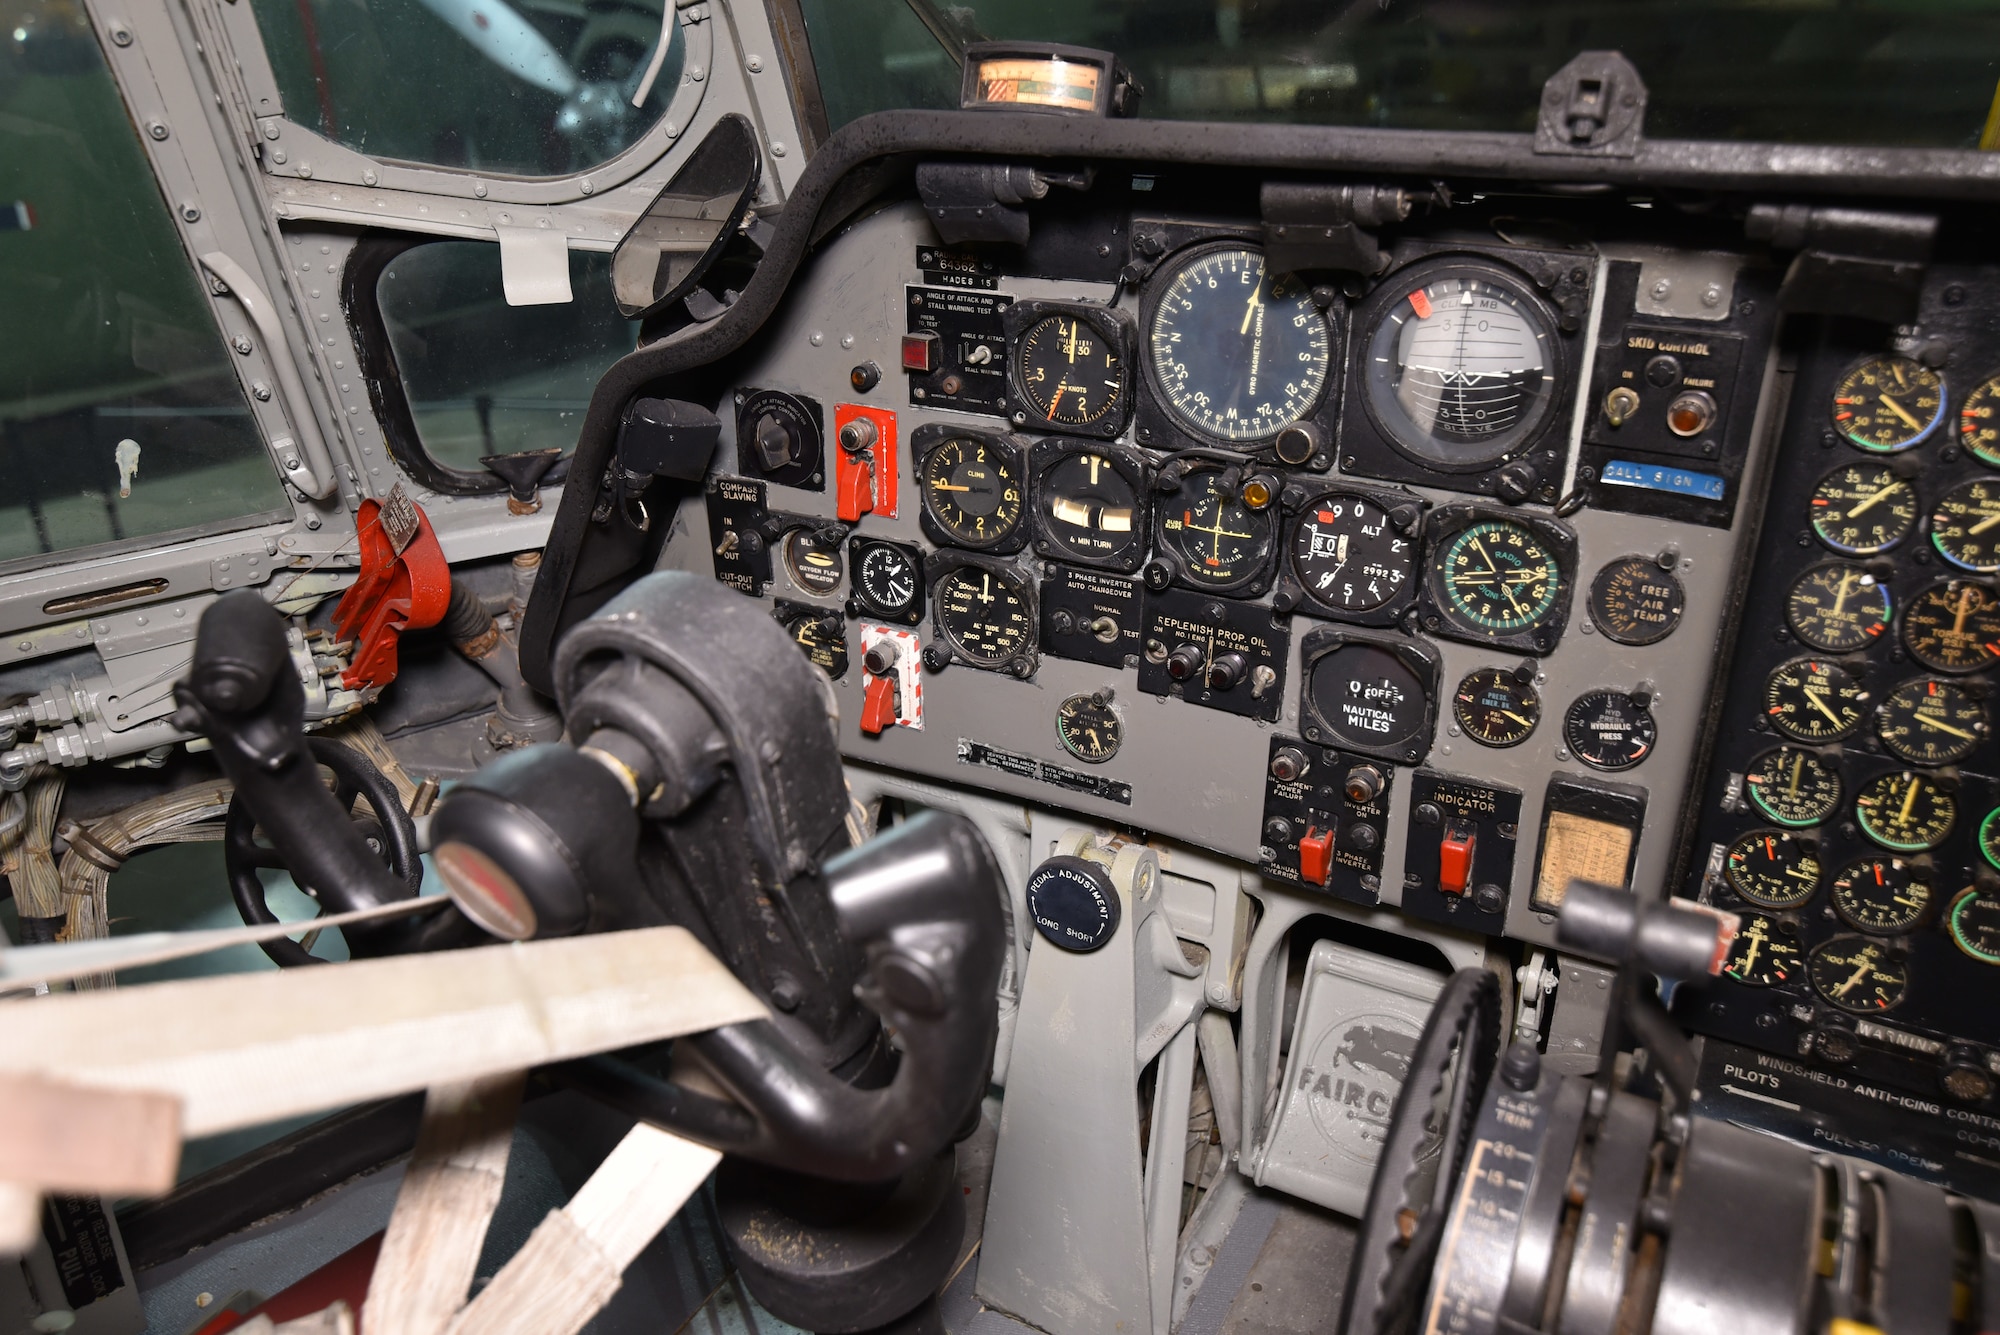 Fairchild C-123K Provider cockpit view